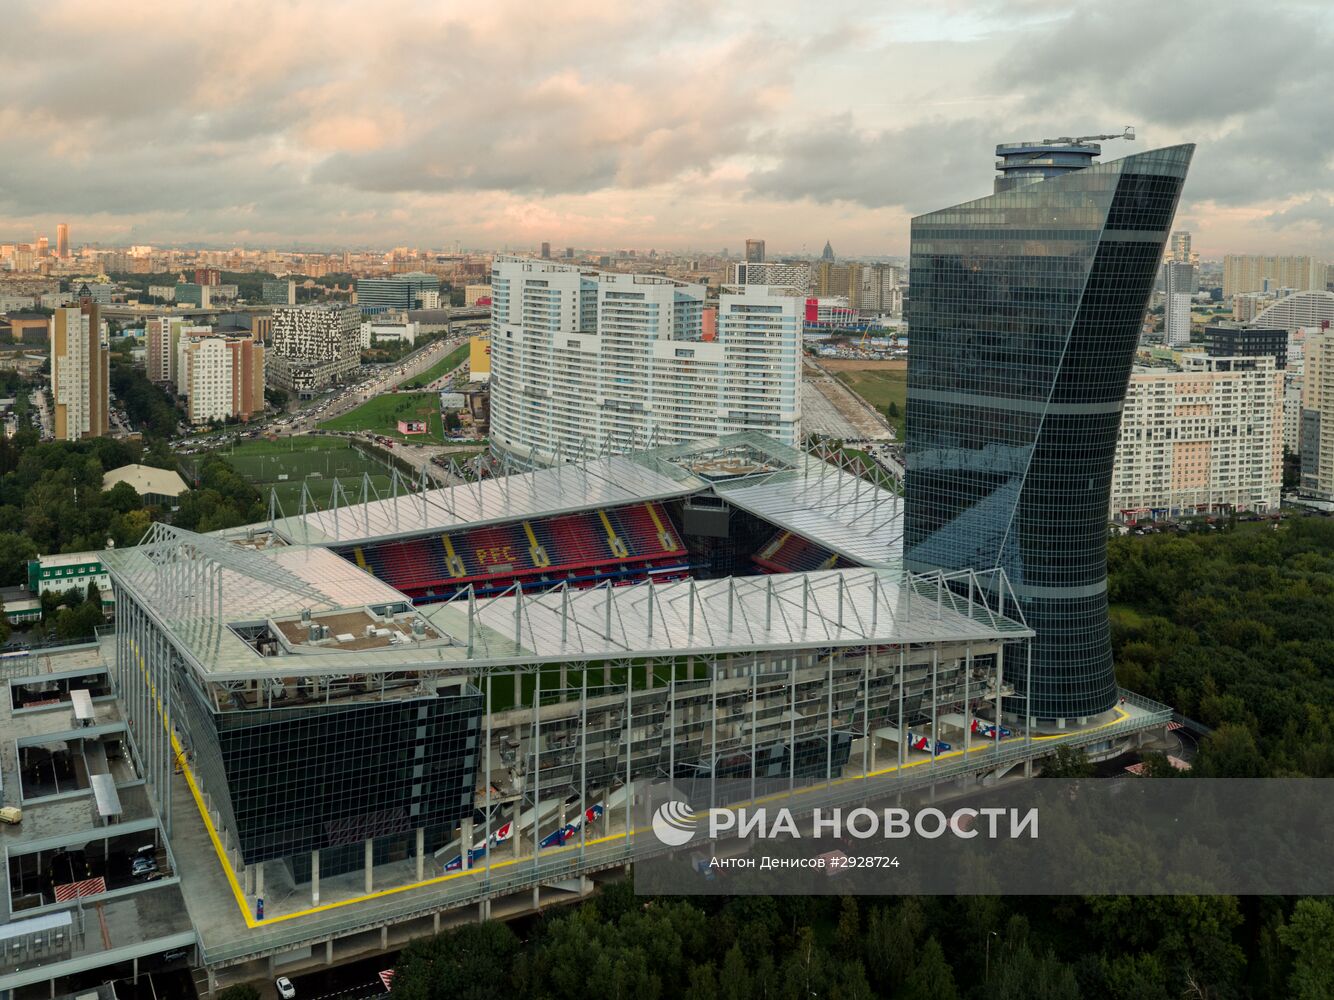 Арена ЦСКА готовится к открытию